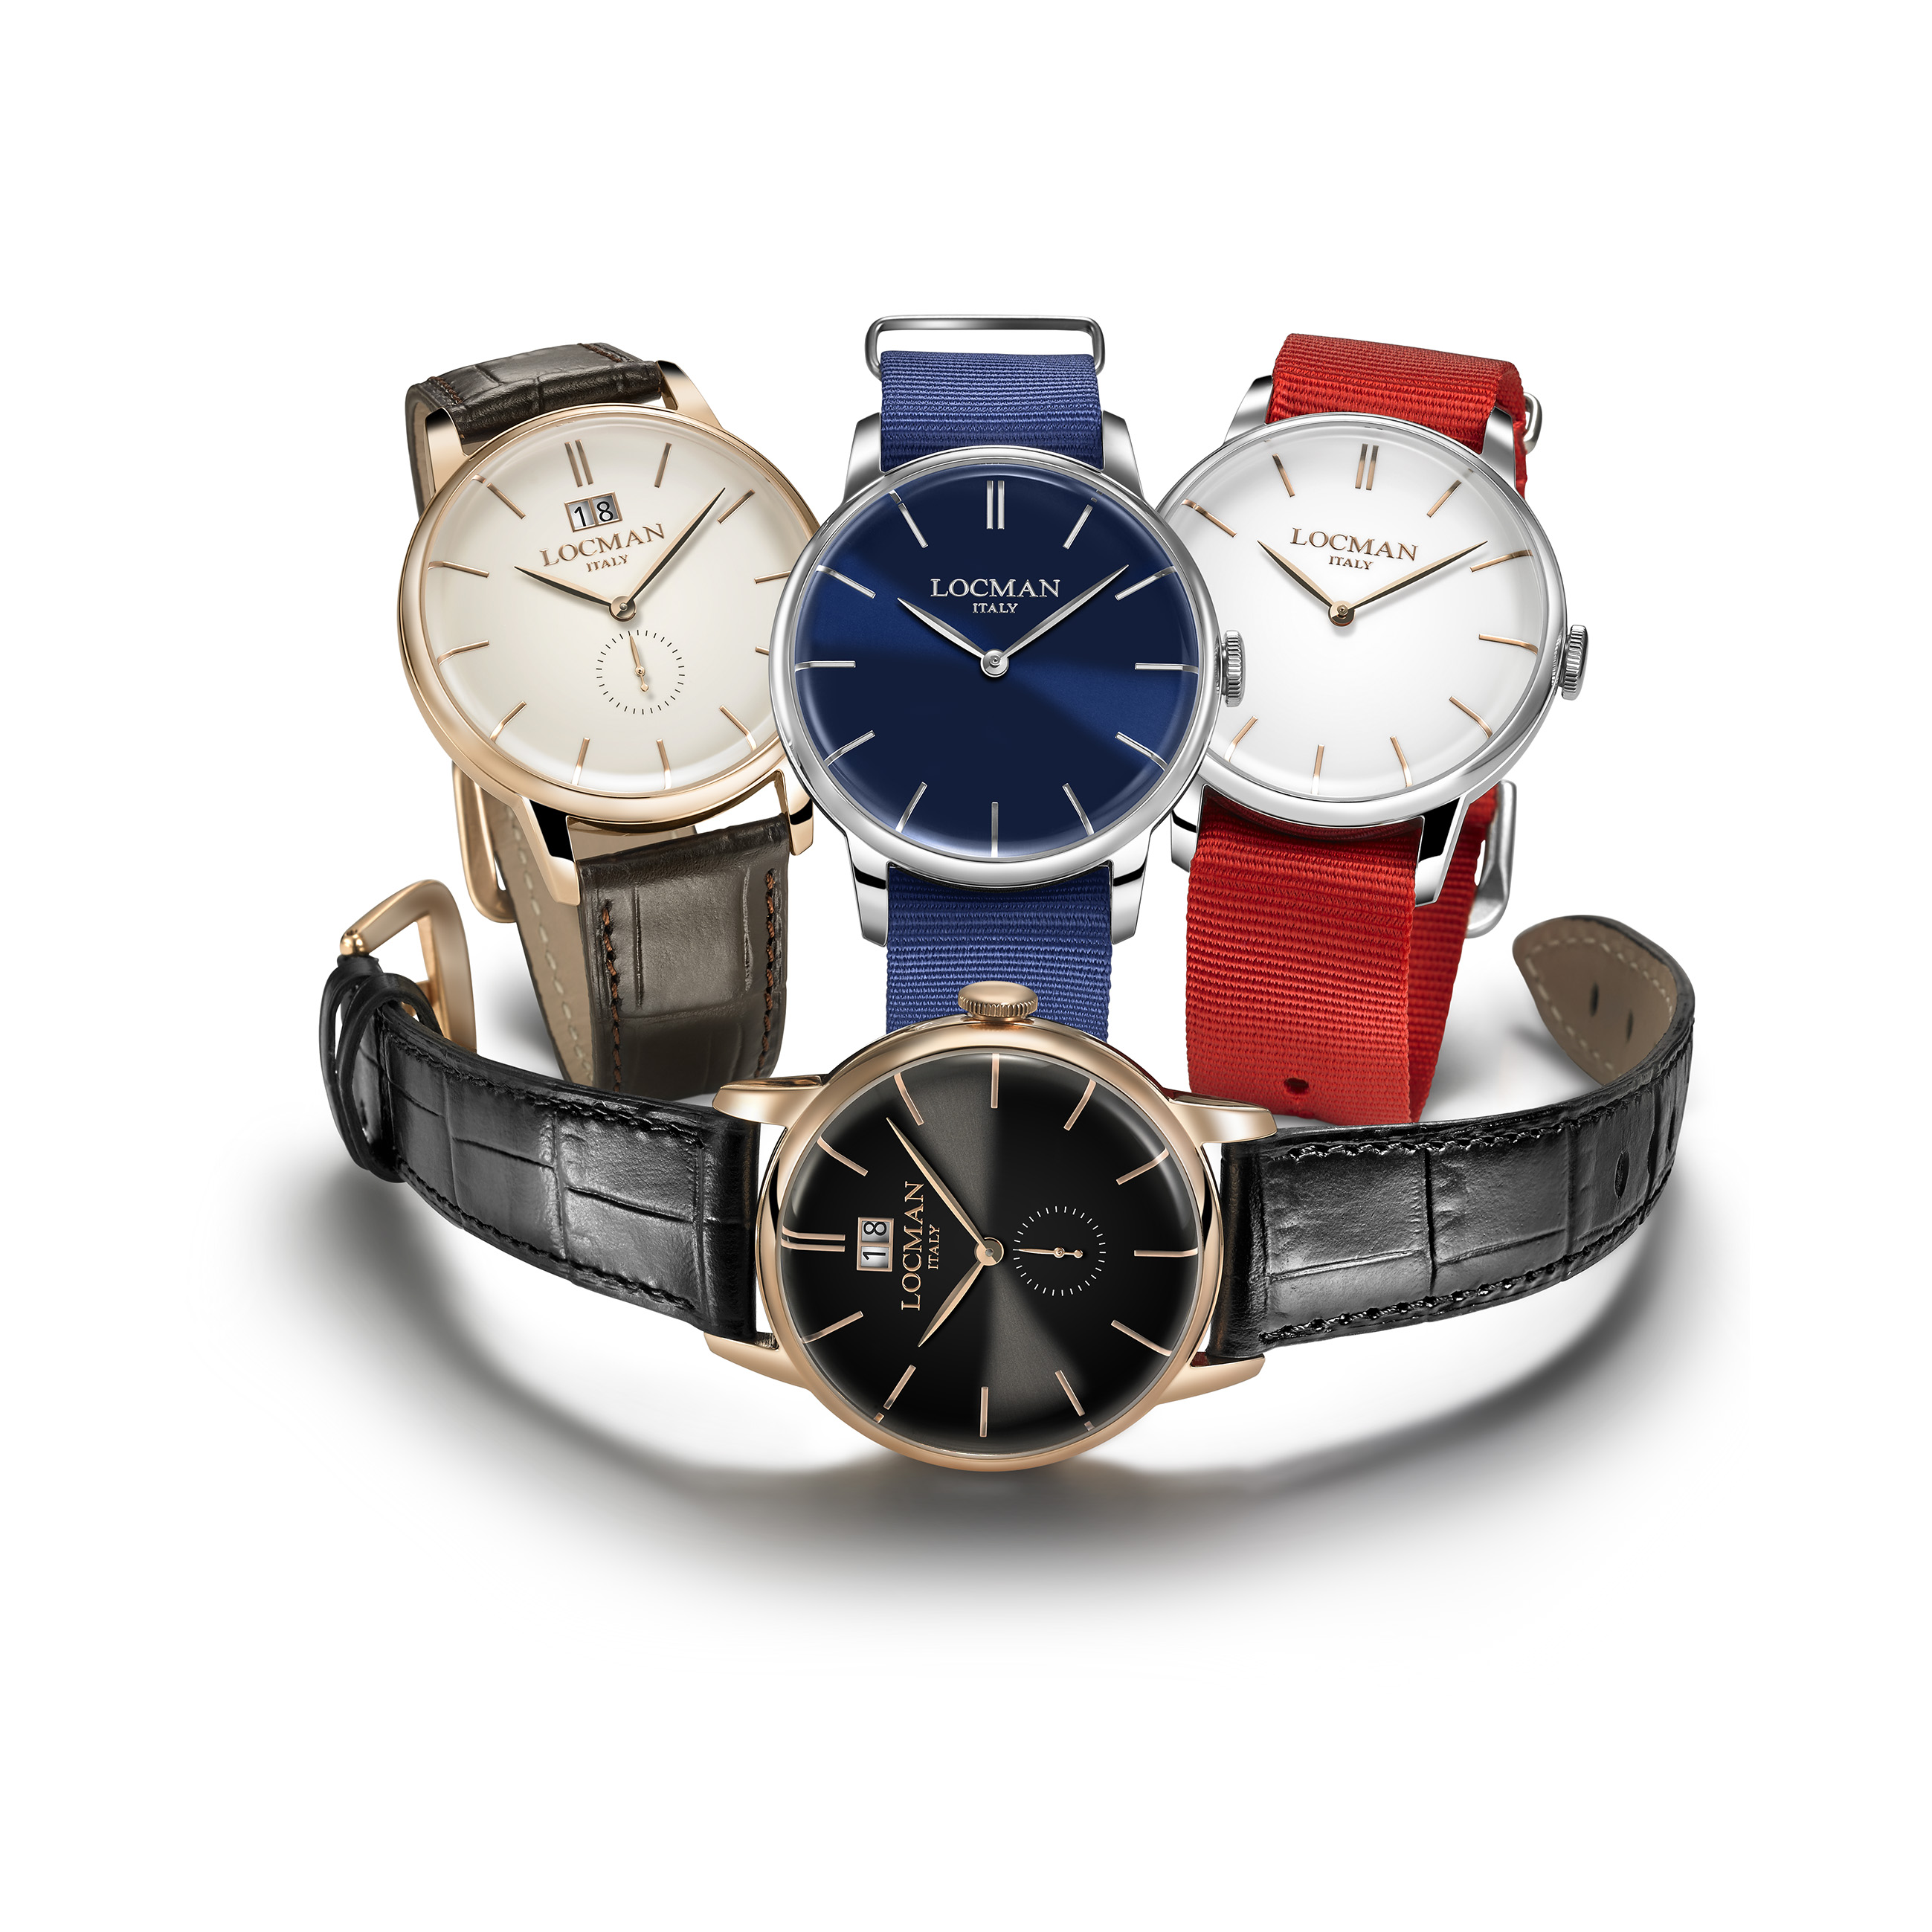 イタリアNo1腕時計ブランド”LOCMAN（ロックマン）“ が、ノージェンダー 